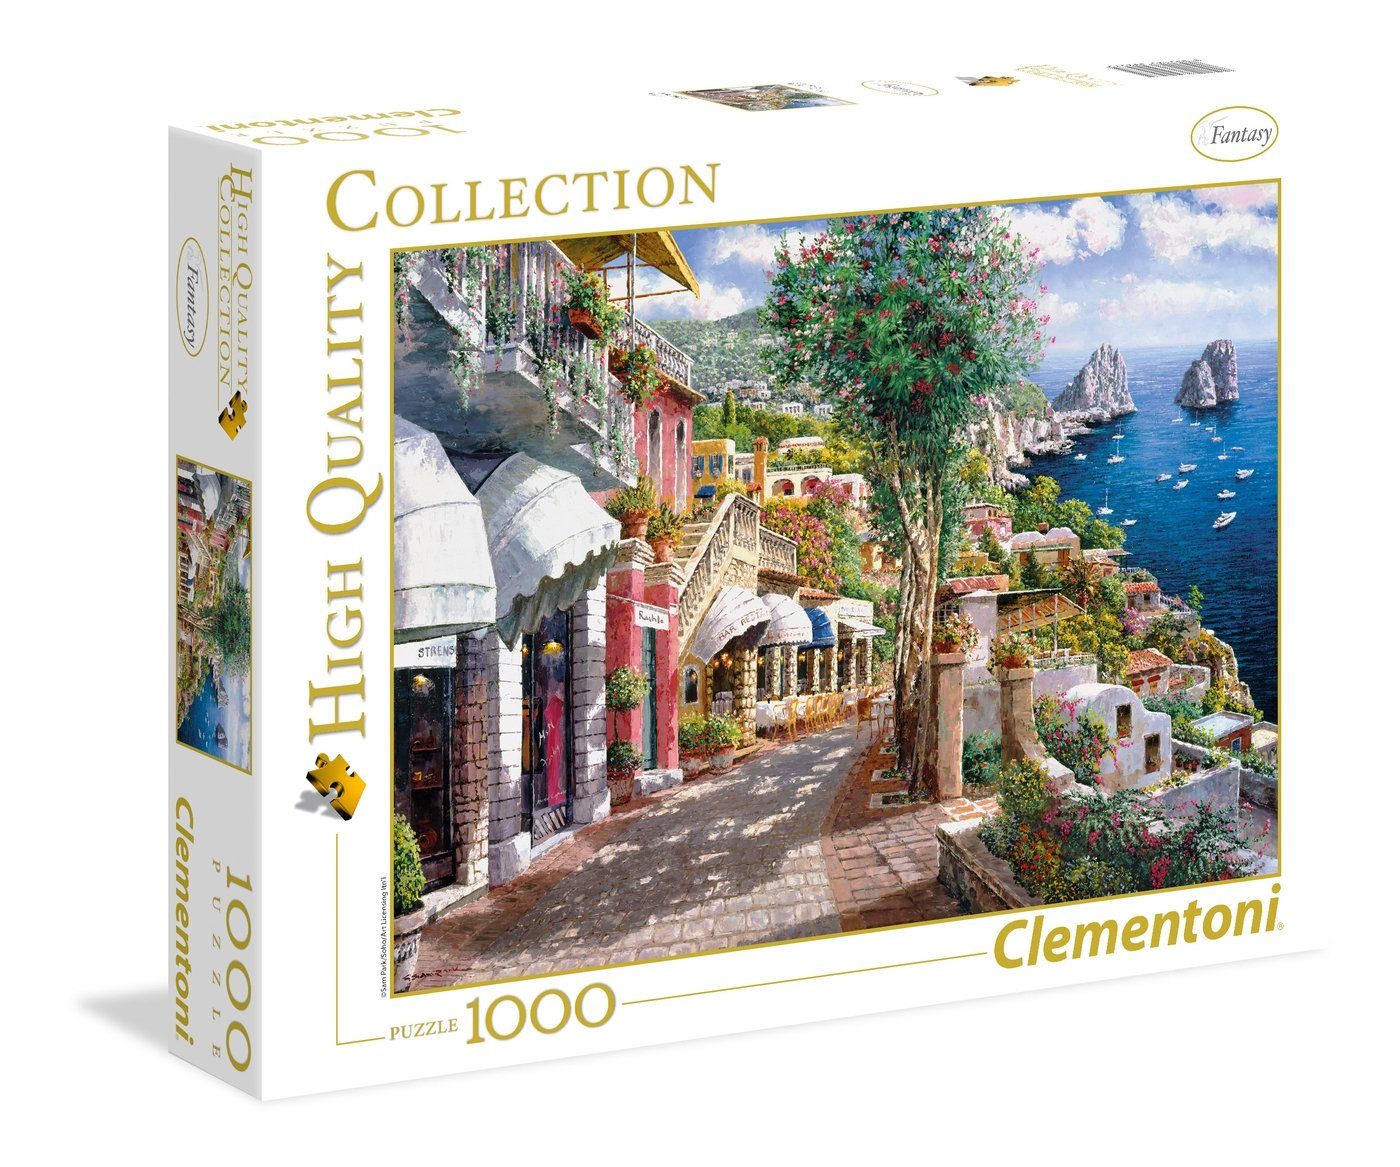 Clementoni® Puzzle Puzzles 501 bis 1000 Teile Clem-39257, Puzzleteile